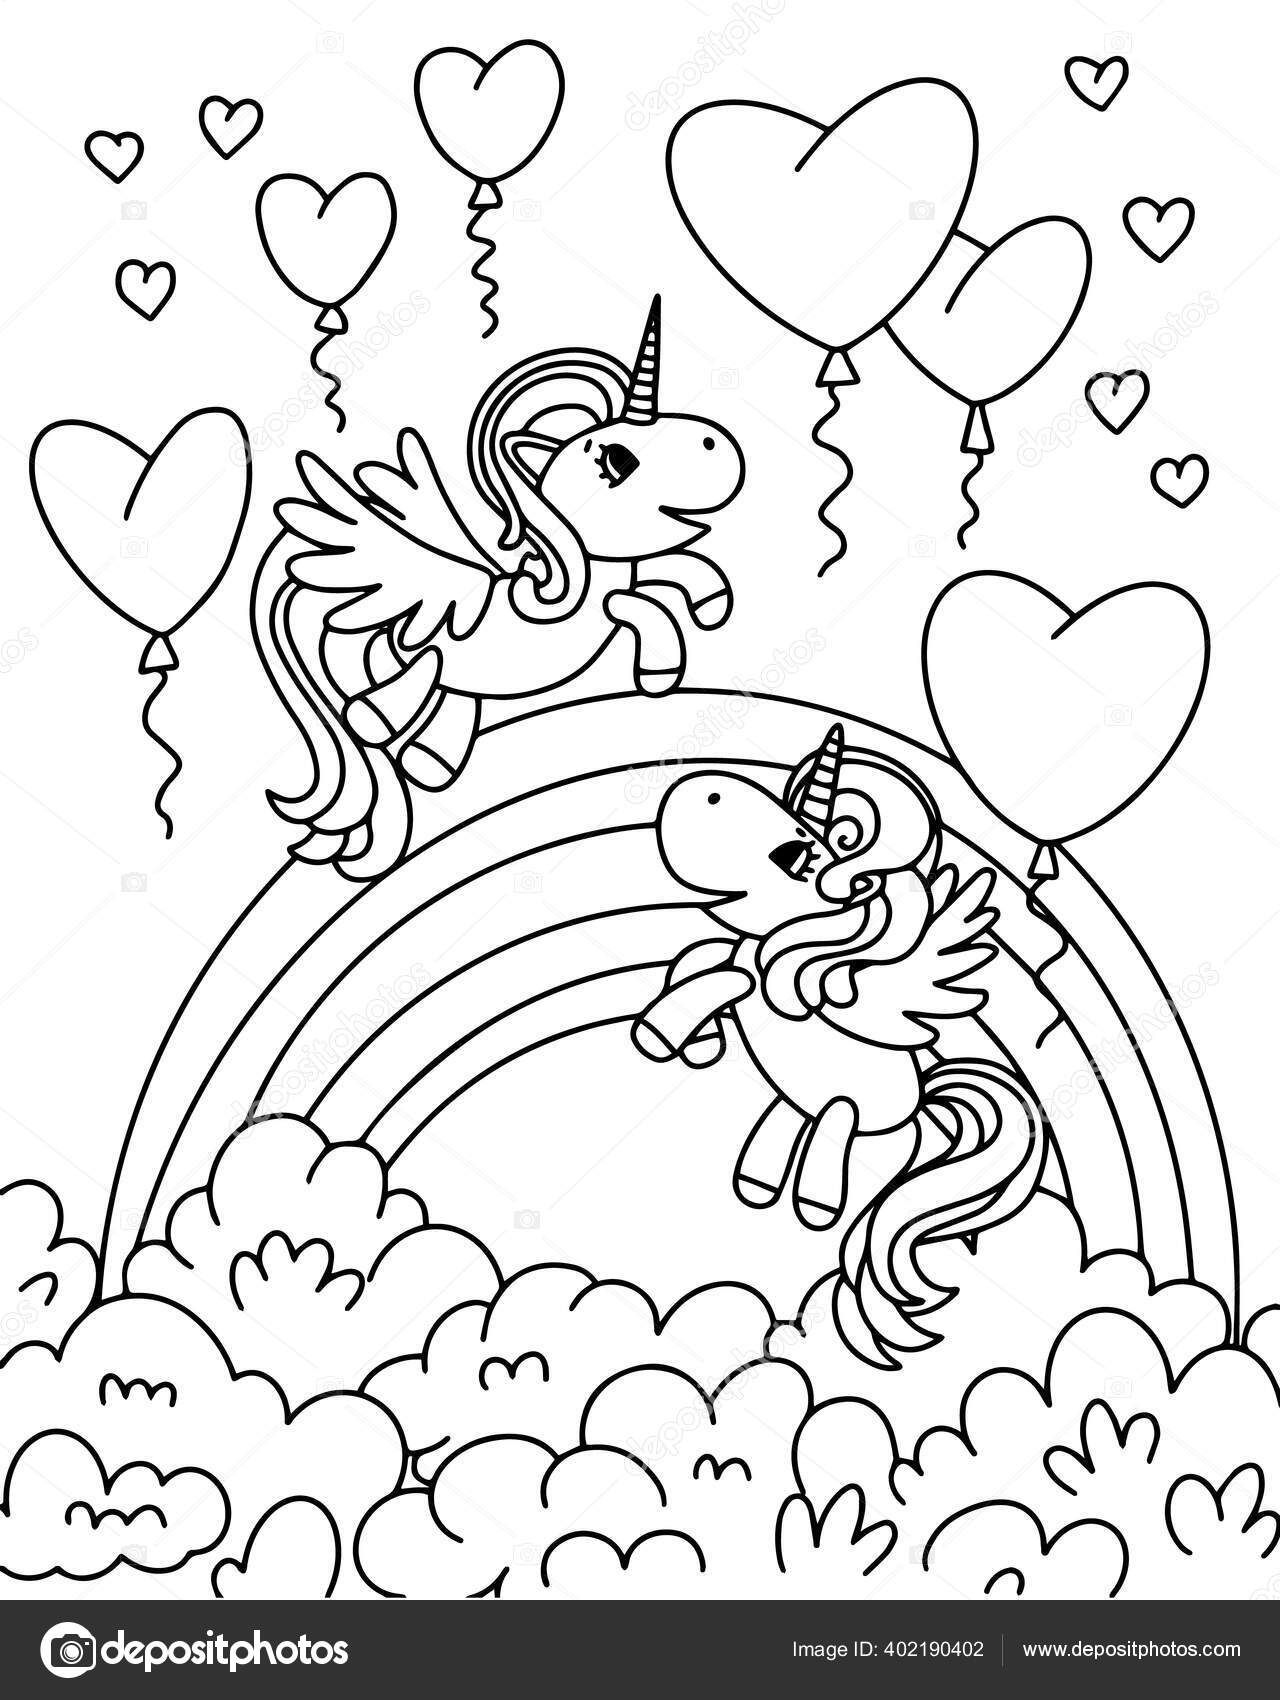 Ilustrasi Vektor Hitam Dan Putih Untuk Buku Mewarnai Anak Anak Unicorn Di Awan Stok Vektor Alenkalink 402190402